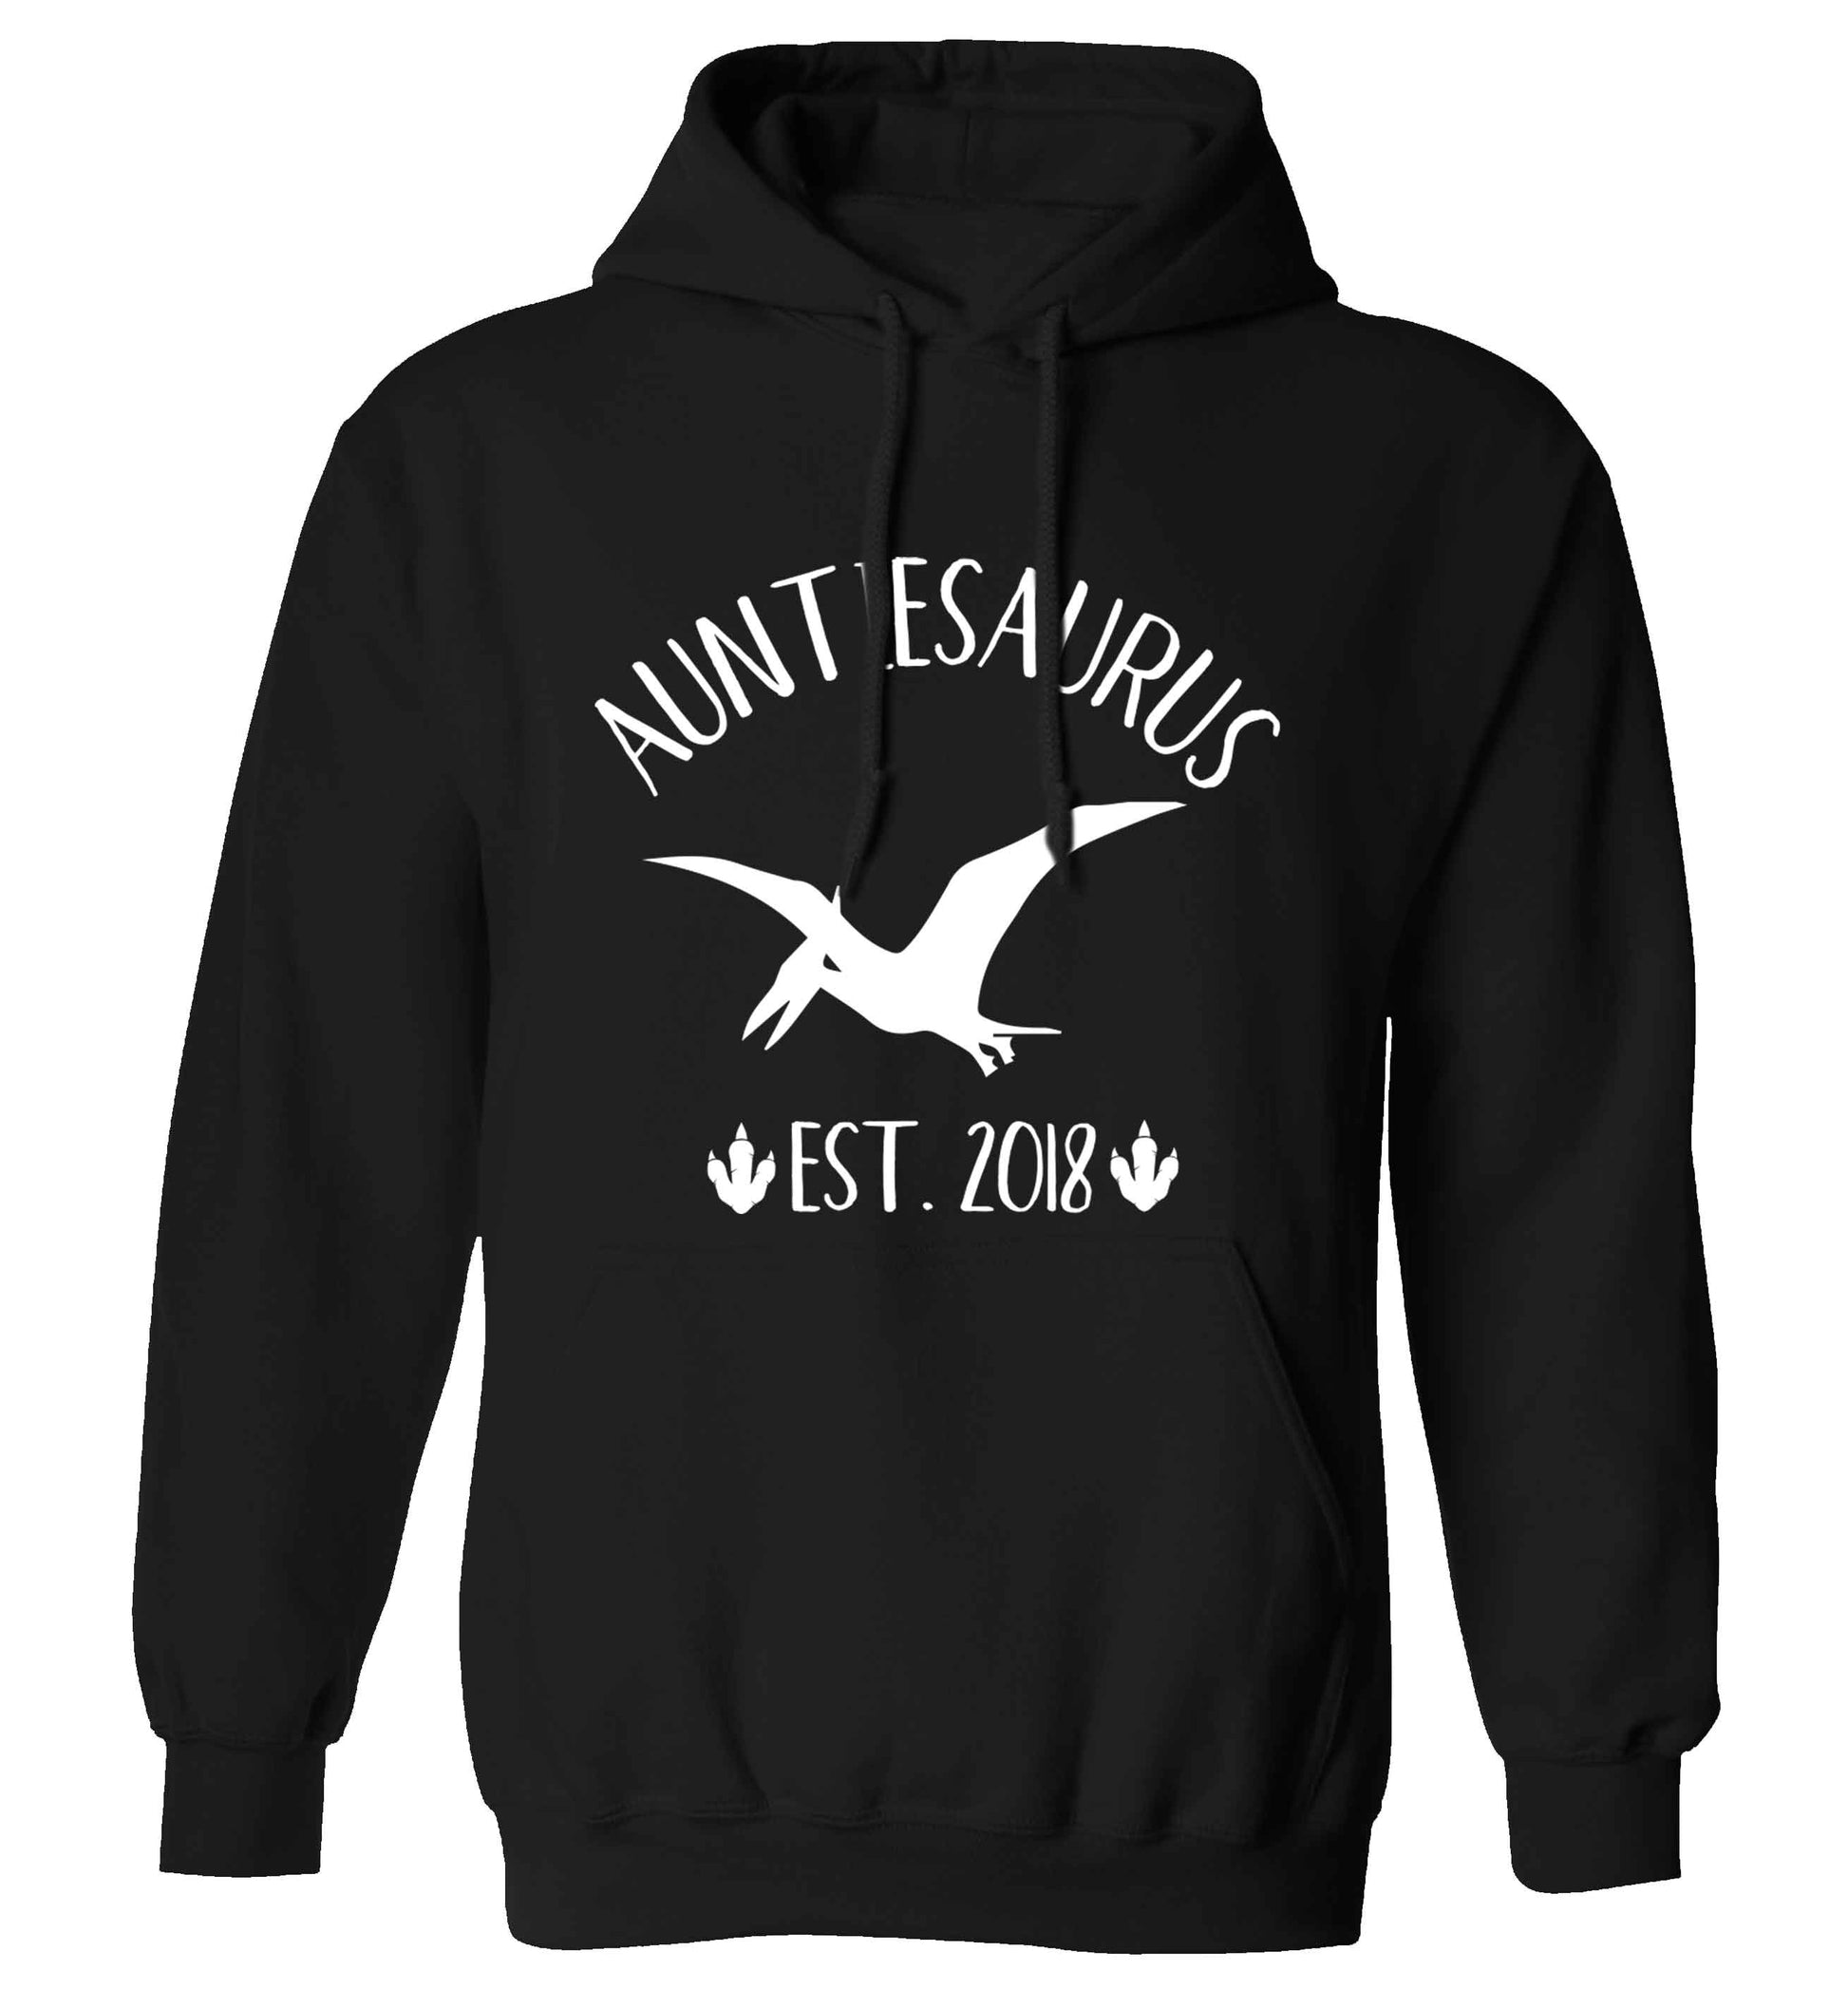 Personalised auntiesaurus since (custom date) adults unisex black hoodie 2XL